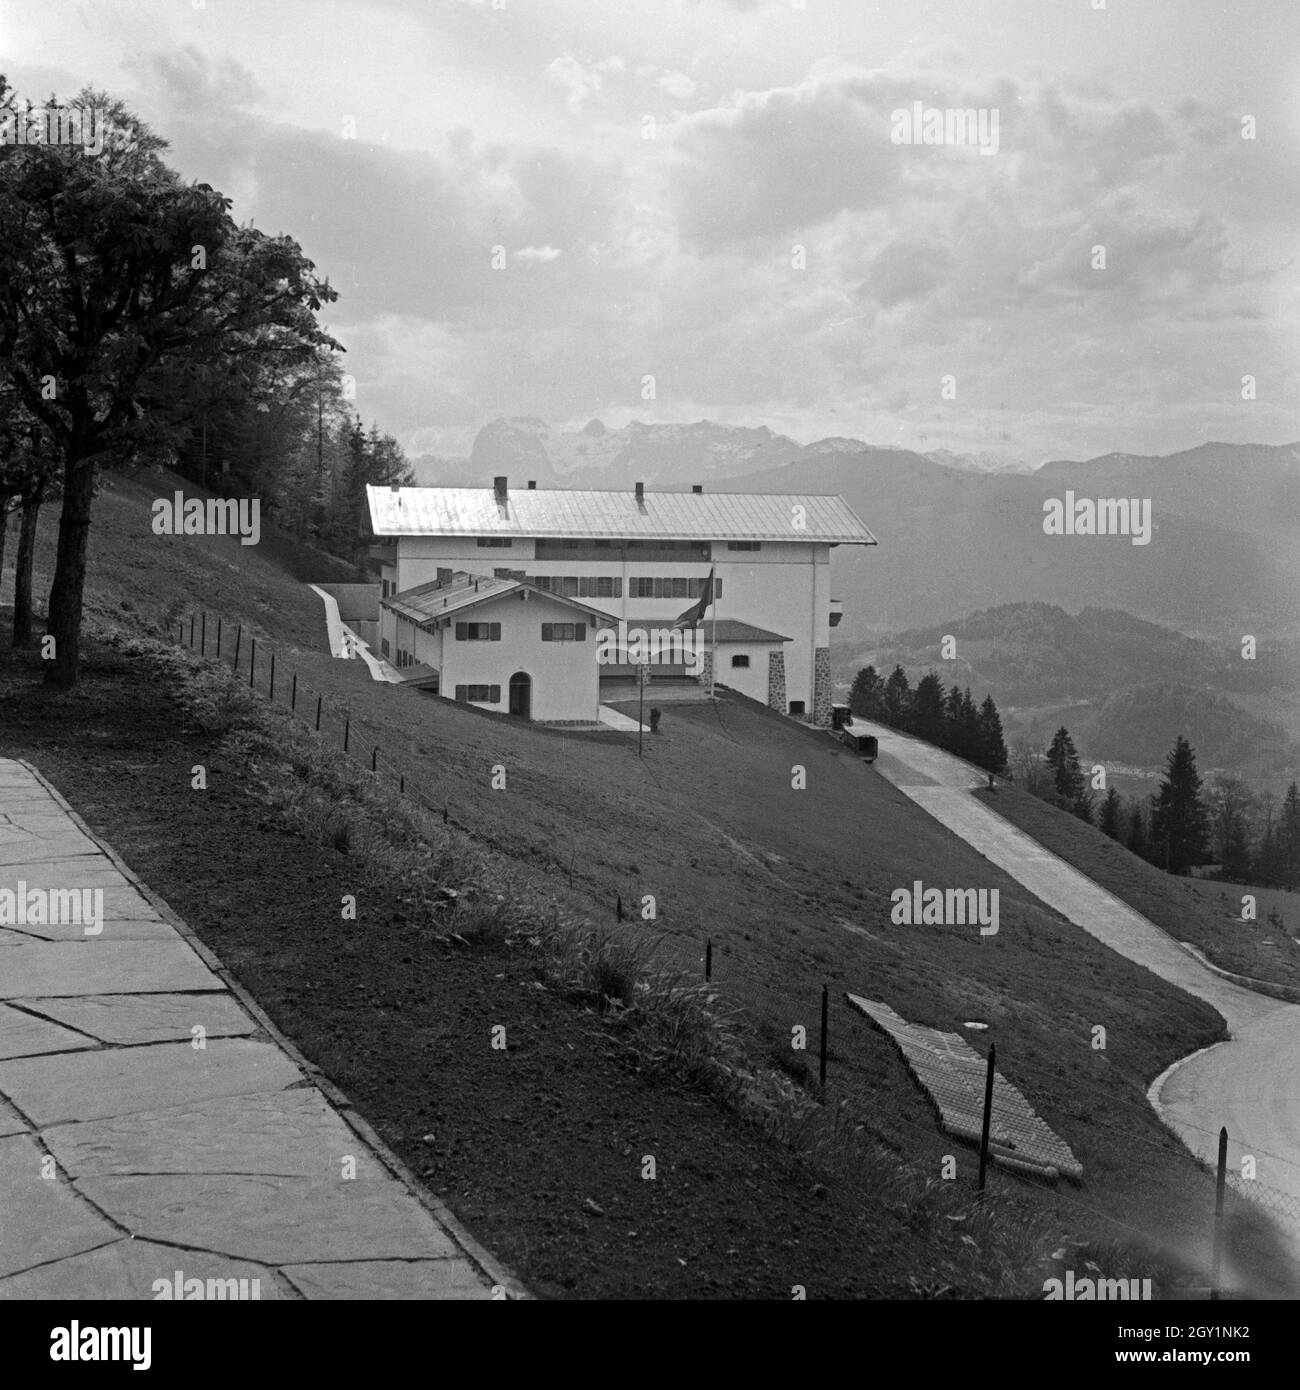 Der Berghof, das Landhaus von Adolf Hitler auf dem Obersalzberg bei Berchtesgden, Deutschland 1930er Jahre. The Berghof, Adolf Hitler's residence at Obersalzberg near Berchtesgaden, Germany 1930s. Stock Photo